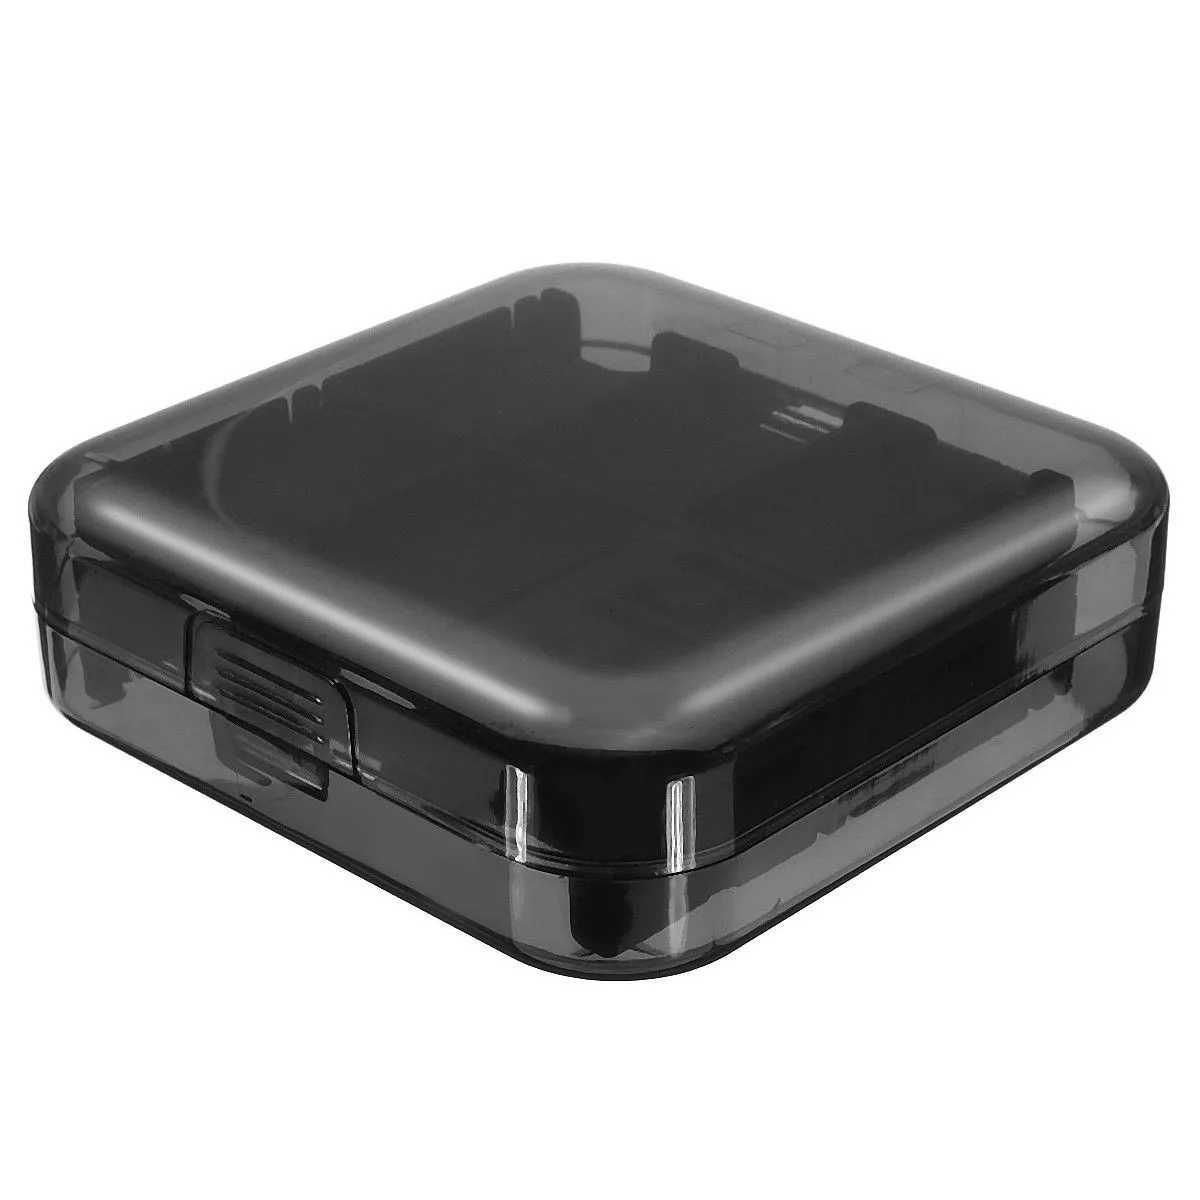 Черный водонепроницаемый чехол для камеры CF/SD карты памяти, пластиковый чехол для хранения драгоценностей, защитный чехол для хранения